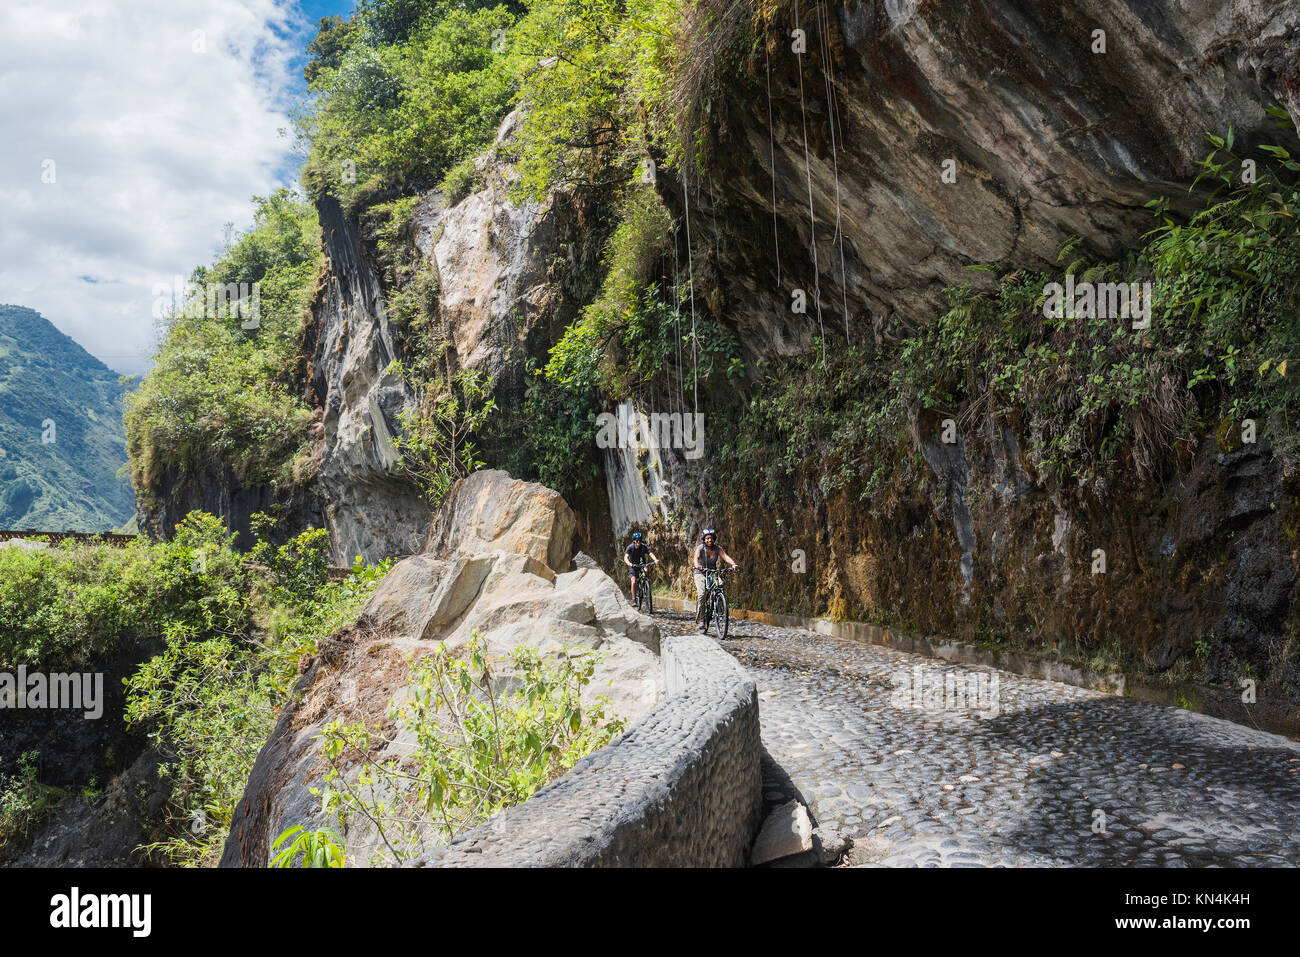 Cascades route, Banos - Puyo, Ecuador - Dezember 8, 2017: Touristen fahren Fahrräder entlang der Wasserfälle Straße über den Abgrund der Schlucht Stockfoto